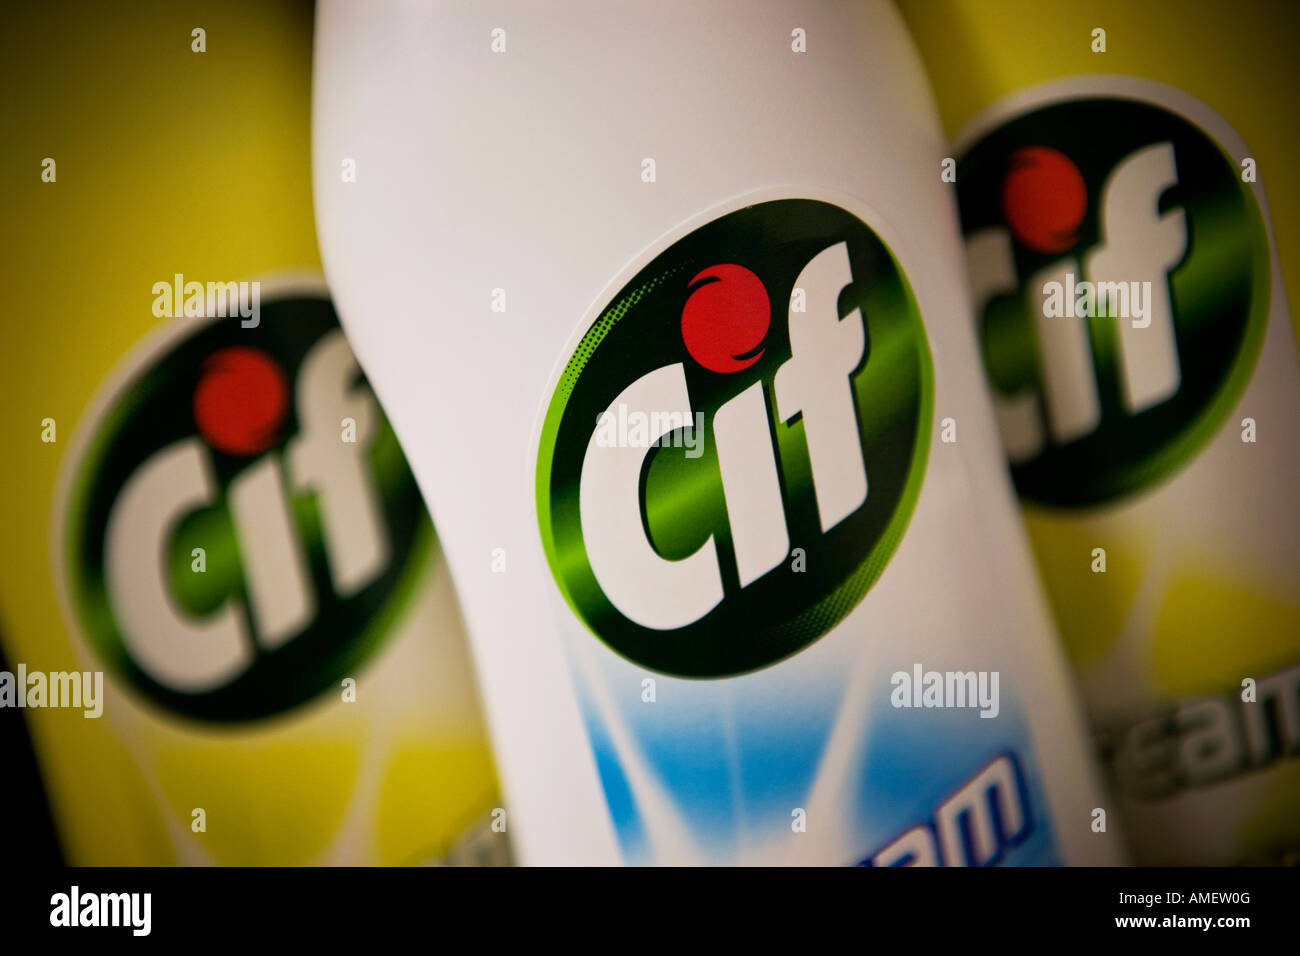 Limpieza cif crema cif es una marca de Unilever Fotografía de